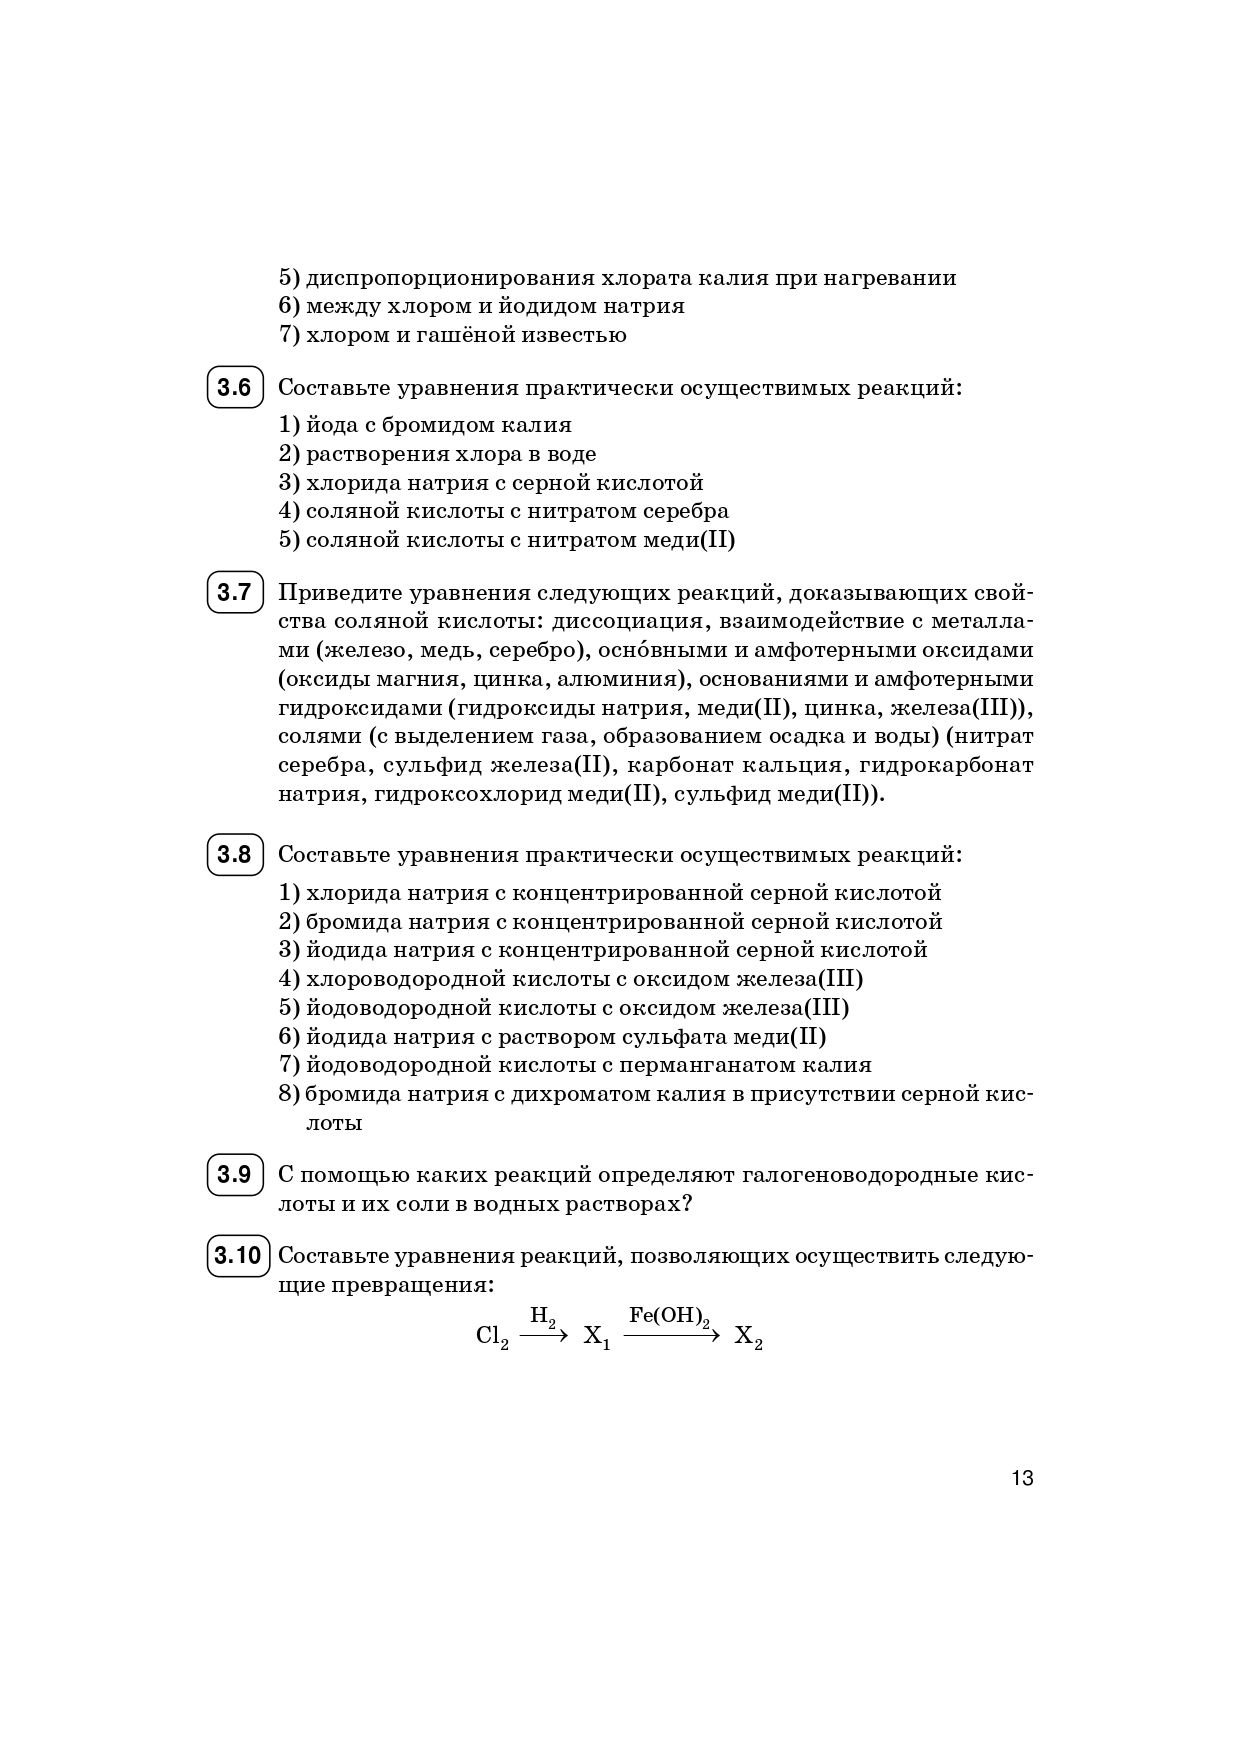 Химия. ЕГЭ. 10–11-е классы. Раздел «Неорганическая химия». Задания и решения. Изд. 6-е, перераб.